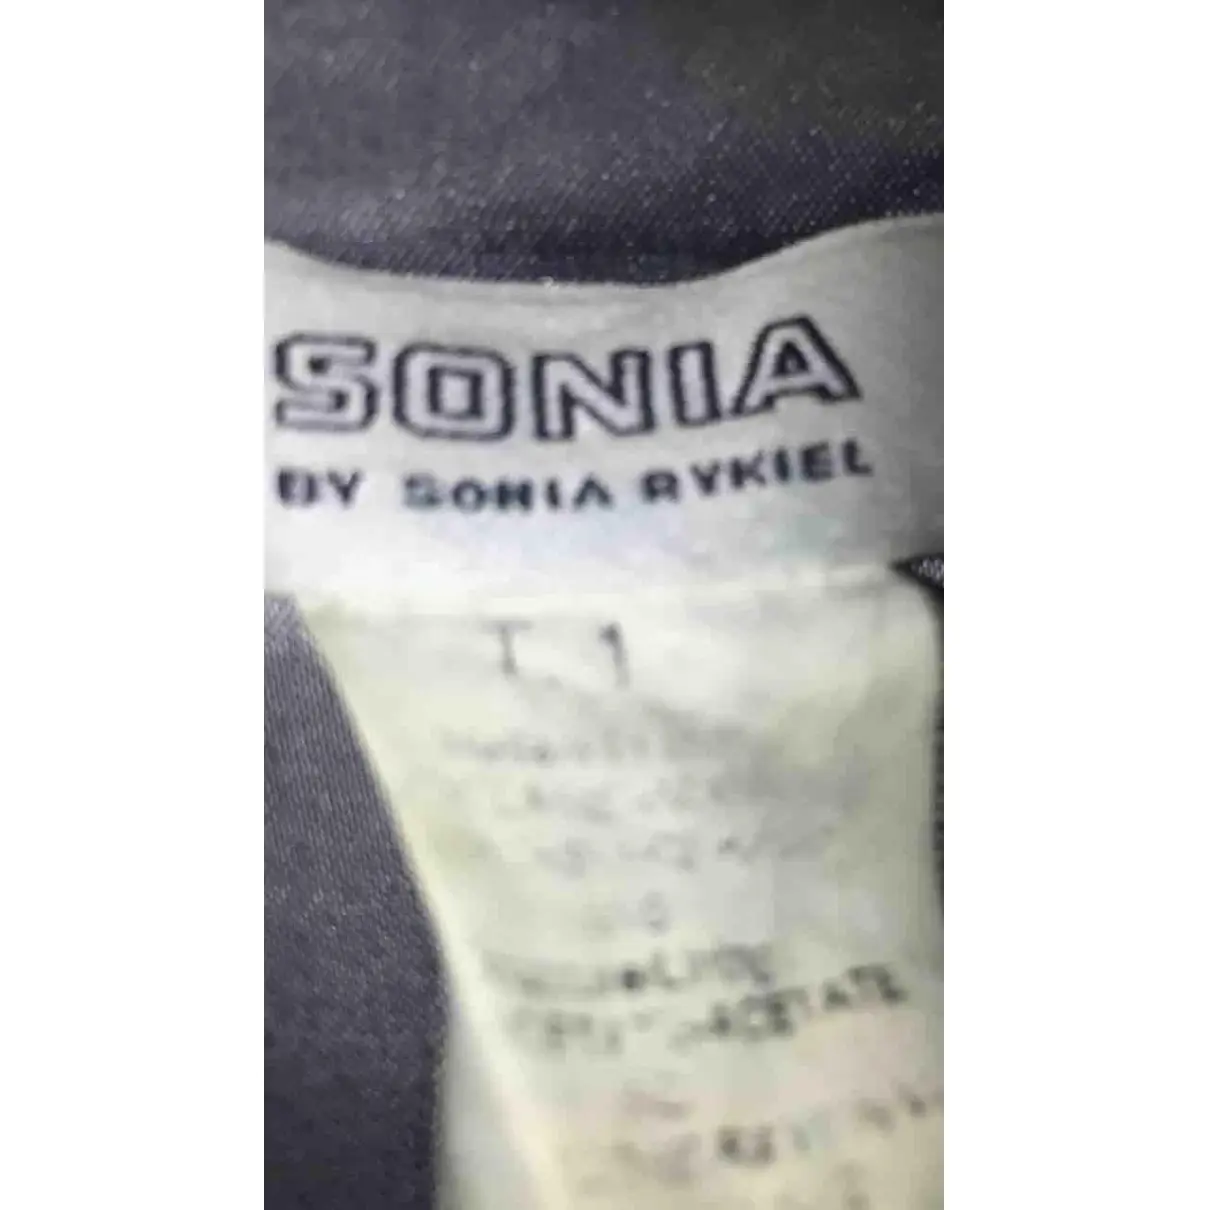 Buy Sonia by Sonia Rykiel Wool coat online